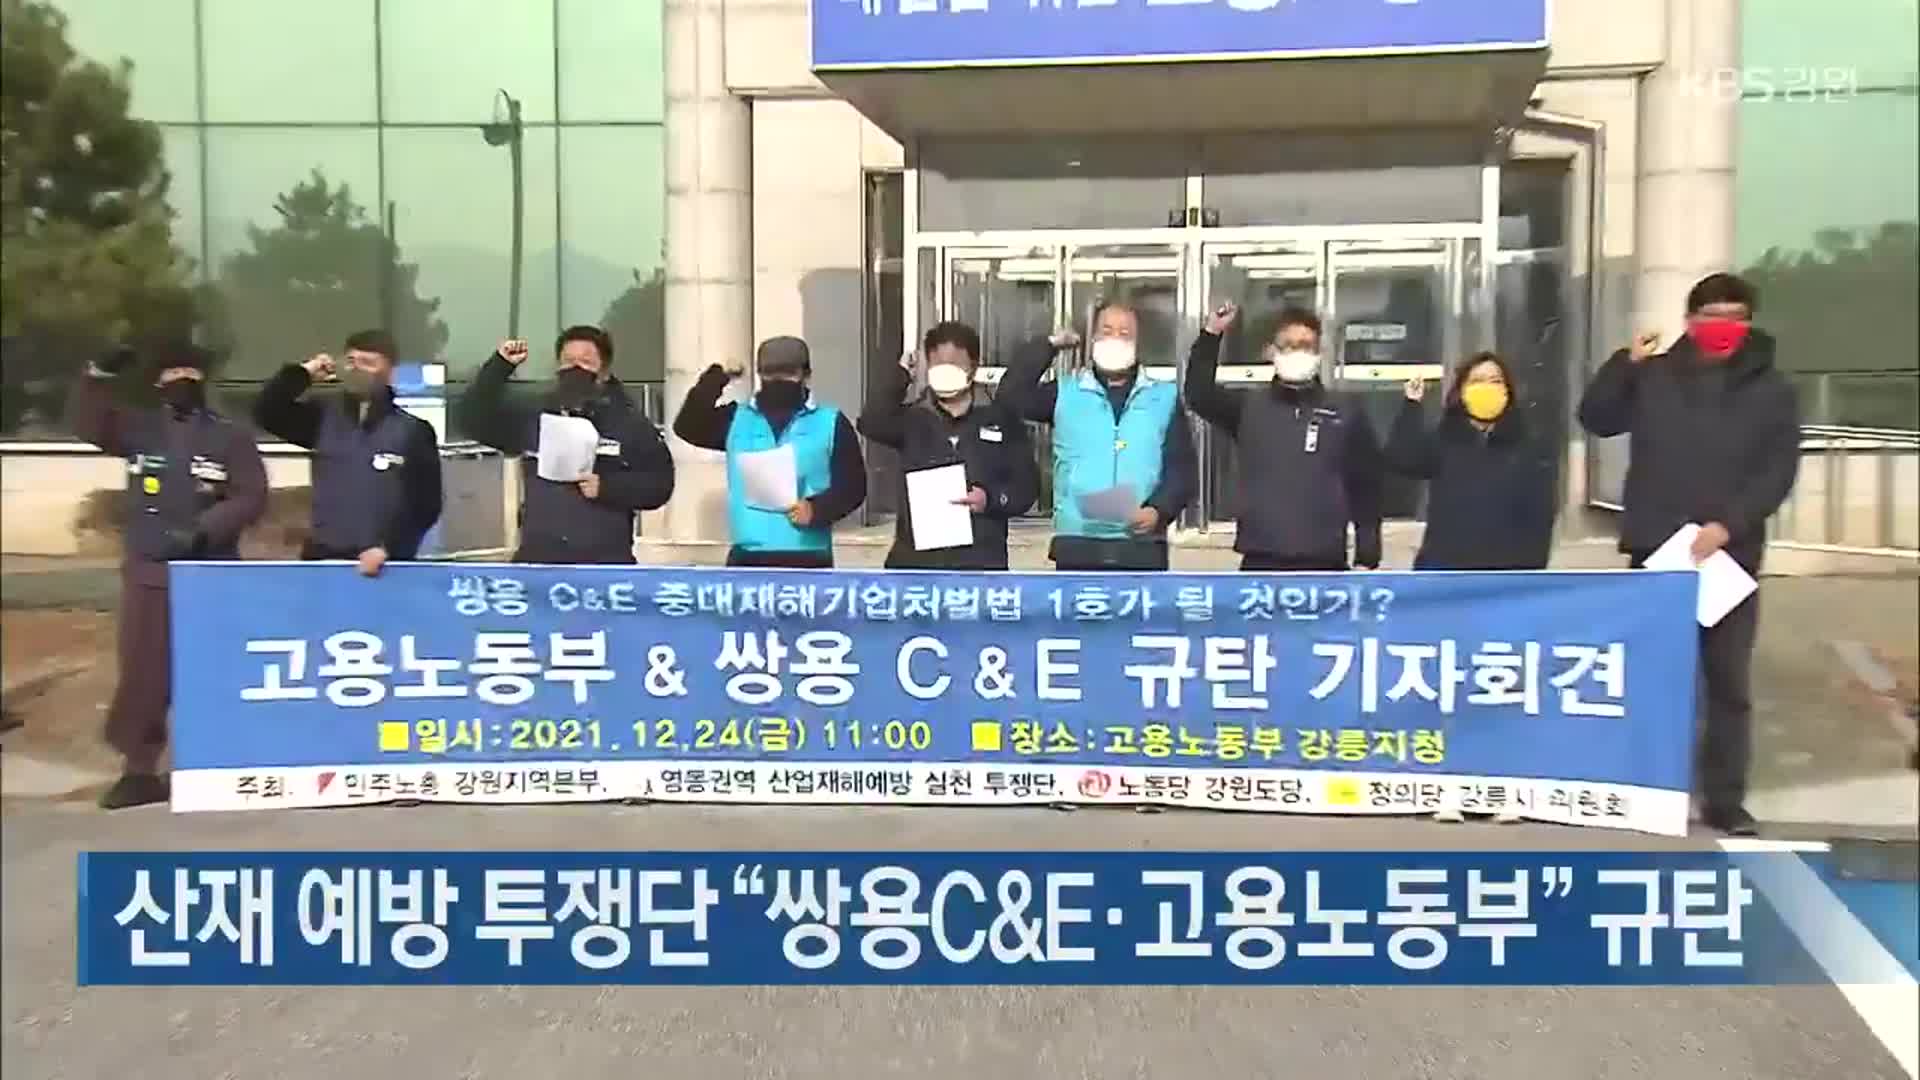 산재 예방 투쟁단 “쌍용C&E·고용노동부” 규탄